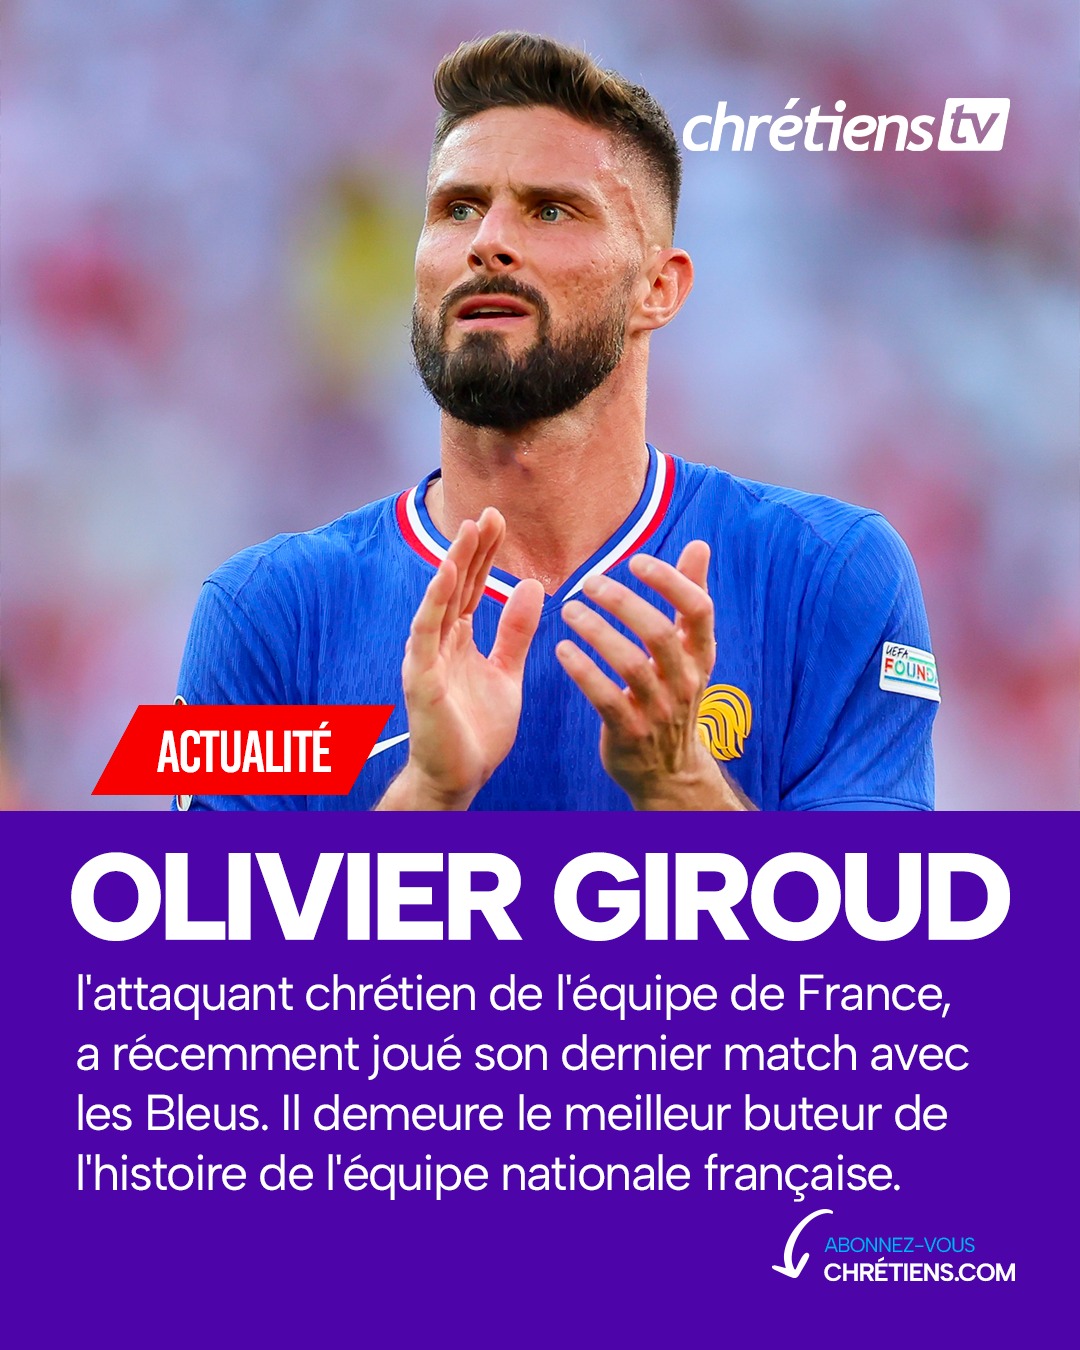 Olivier Giroud, footballeur international français et chrétien évangélique engagé, a participé à sa dernière rencontre en équipe de France lors de la demi-finale face à l’Espagne. Le meilleur buteur de l’histoire de l'équipe de France s’arrête à 57 réalisations.